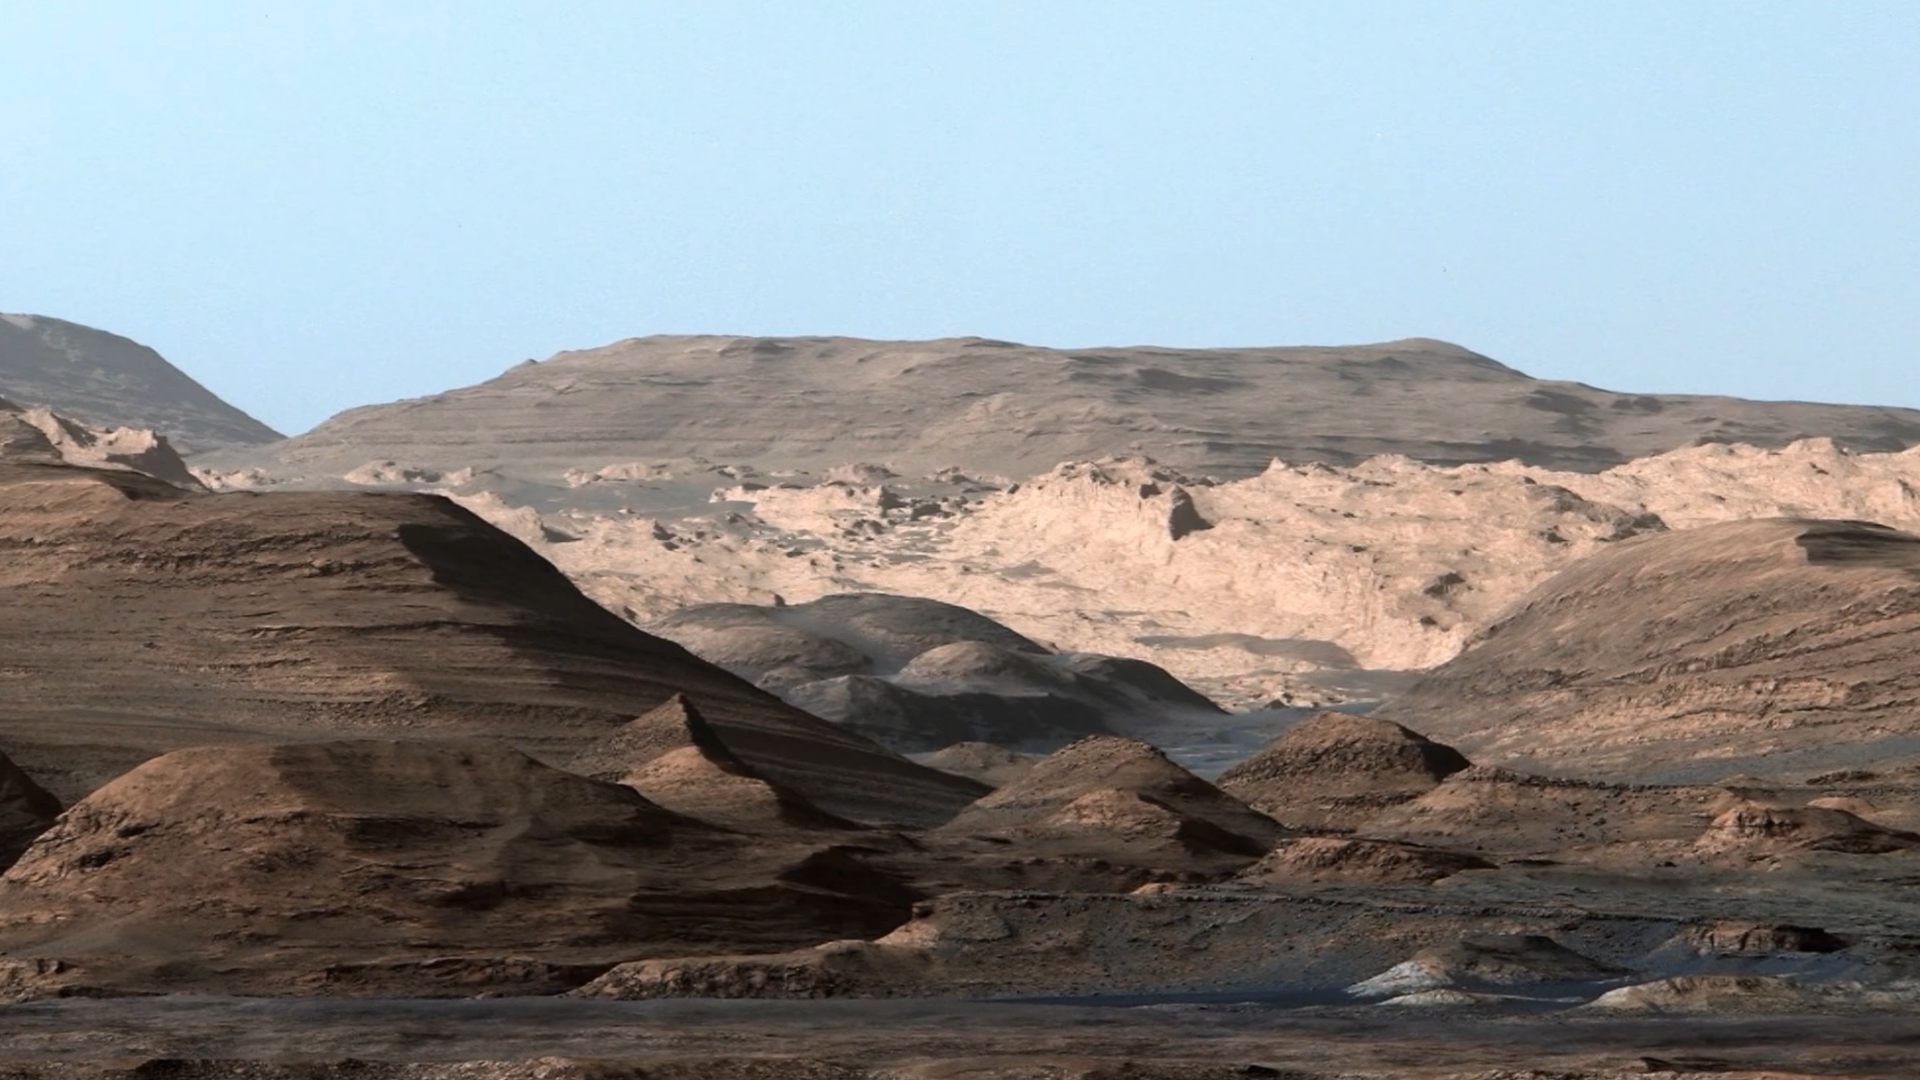 Mars landscape without NASA's orange lens filter.